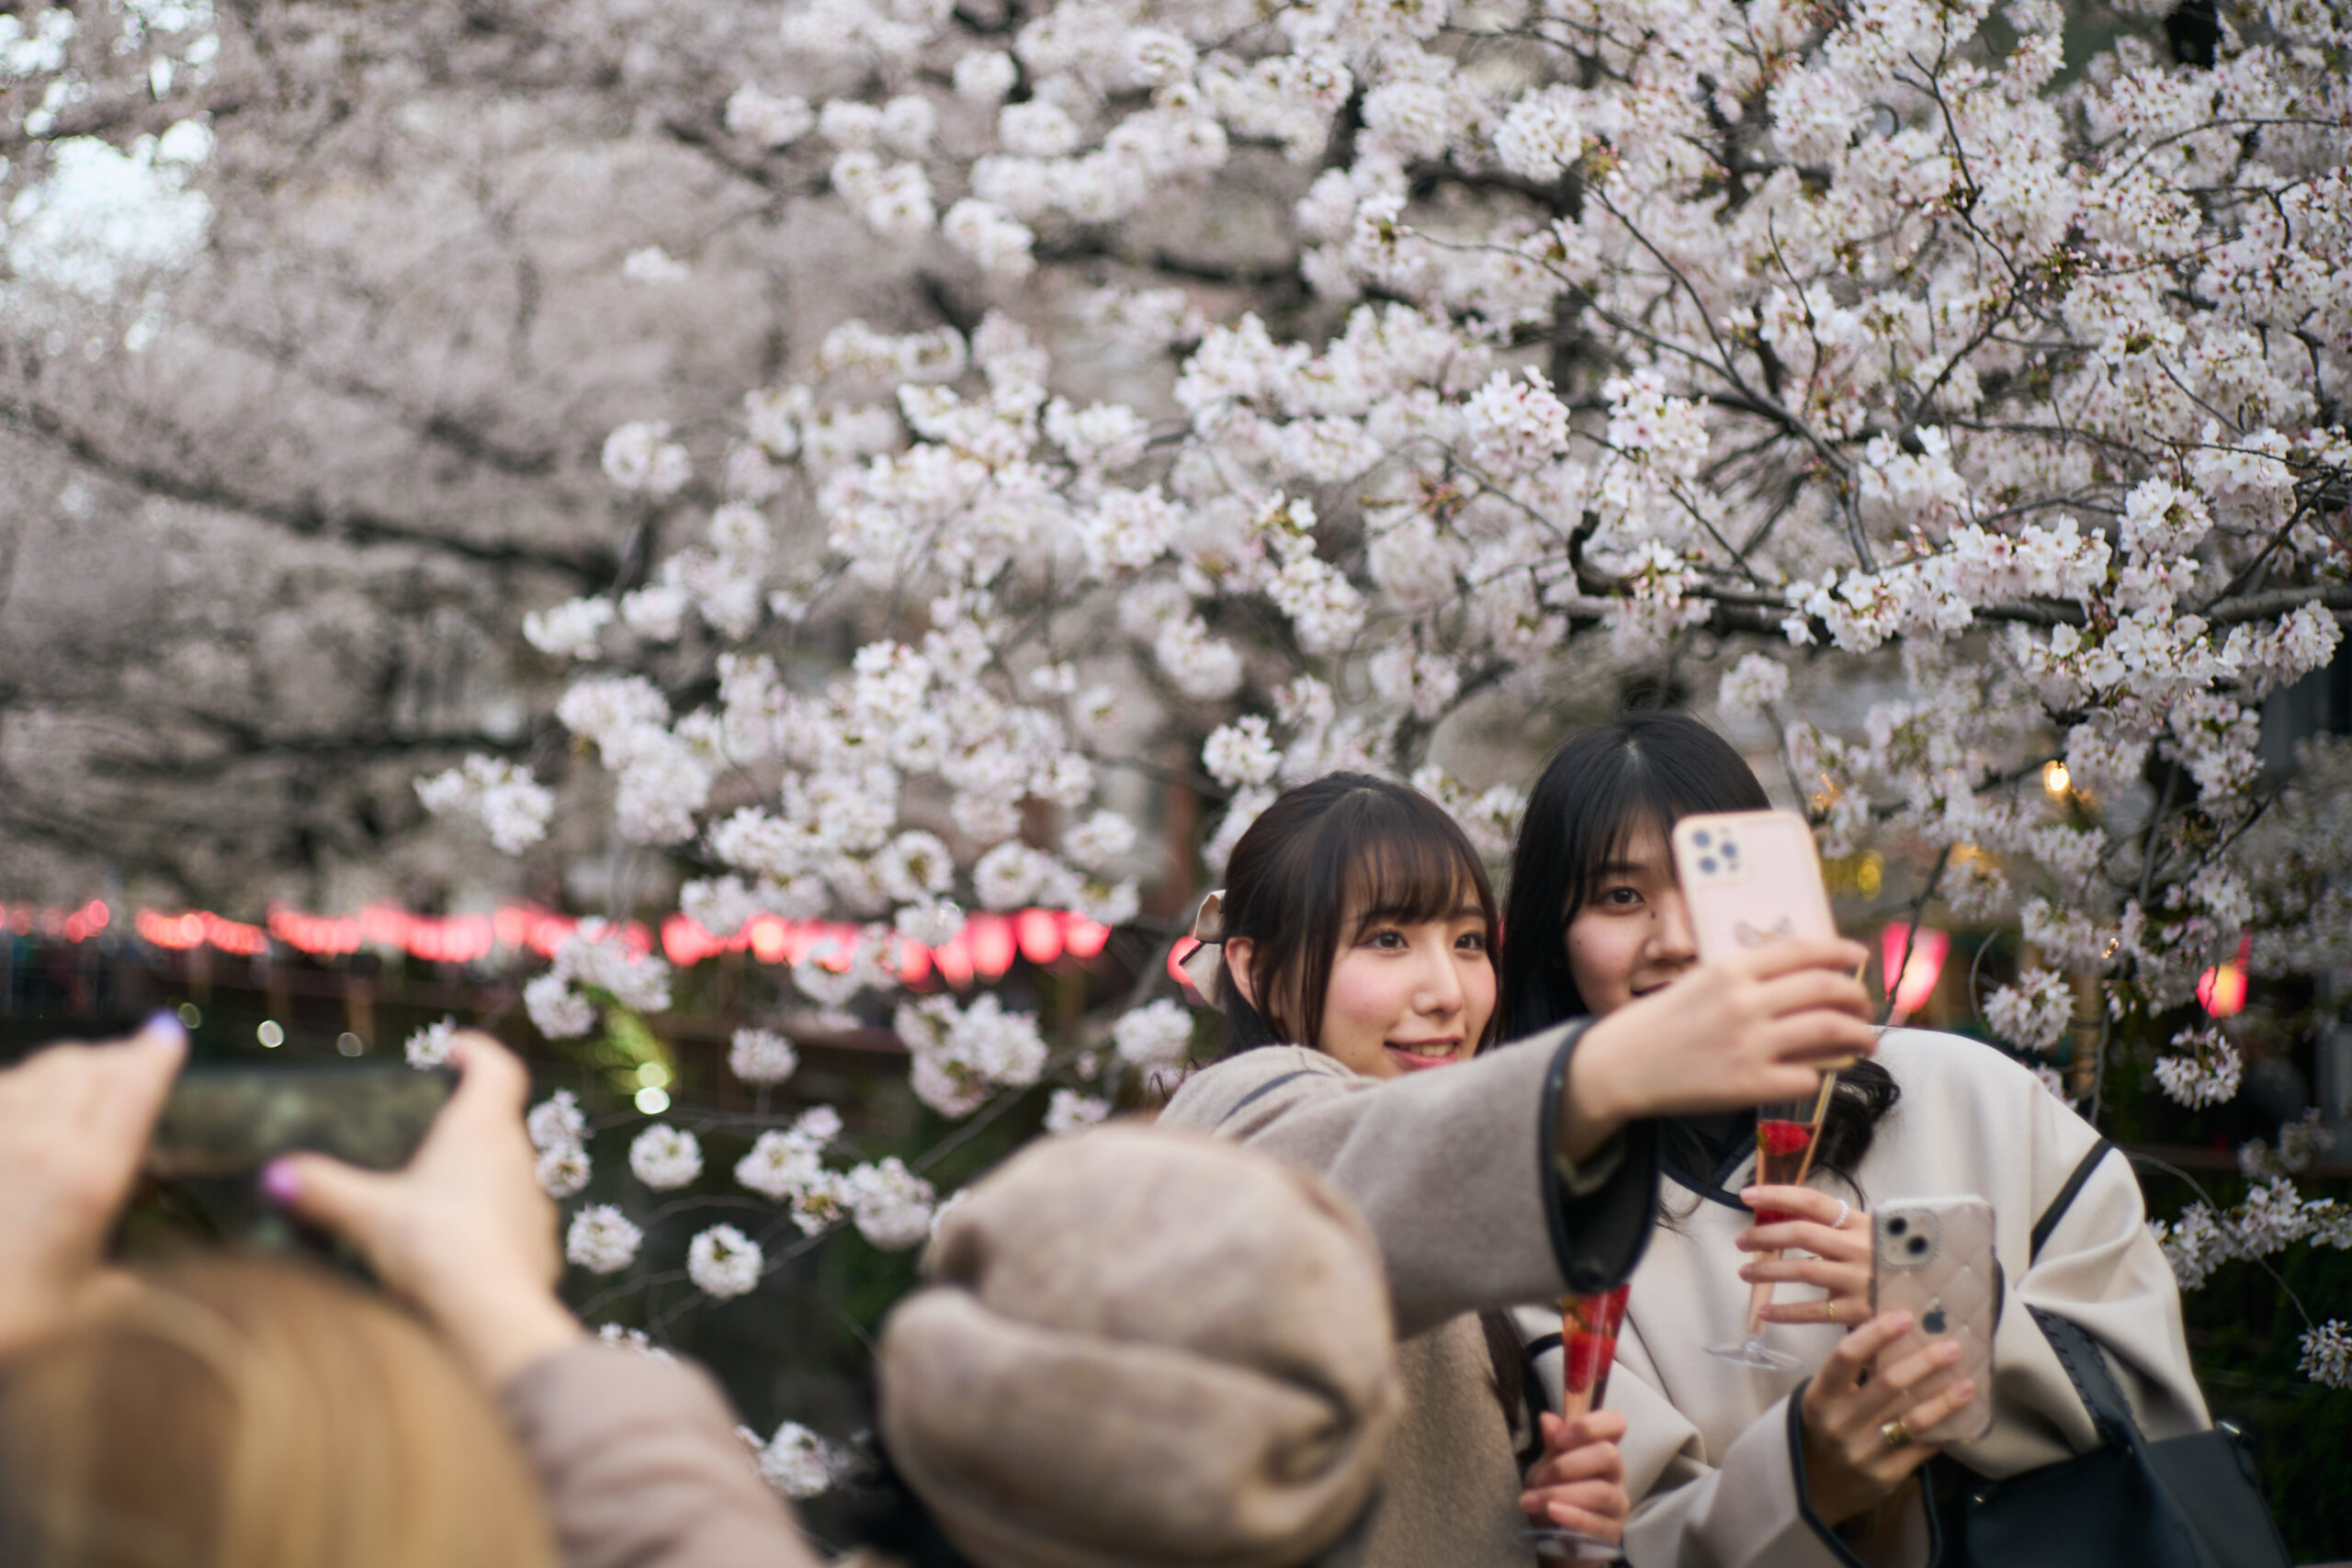 สำรวจพบชาวญี่ปุ่นยังไม่แต่งงาน-วัยต่ำกว่า 30 เกือบครึ่ง 'ไม่ต้องการมีลูก'